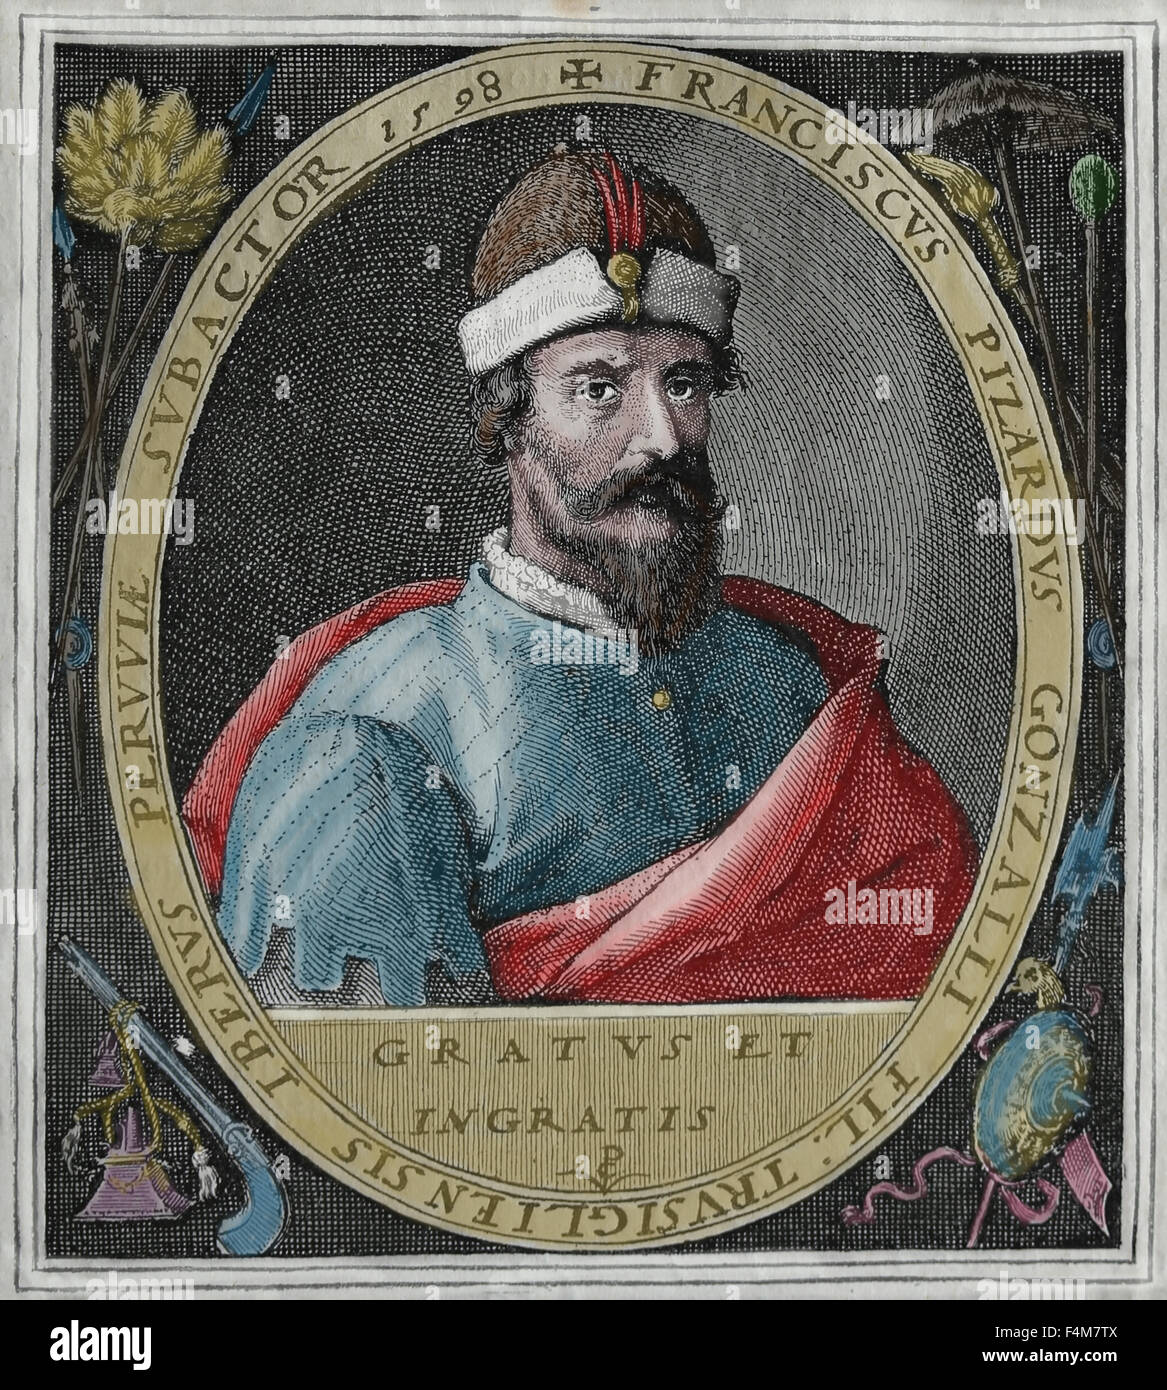 Francisco Pizarro (1471-1541). Die spanischen Eroberer des Inka-Reiches. Porträt. Kupferstich aus dem 16. Jahrhundert. Spätere Färbung. Stockfoto